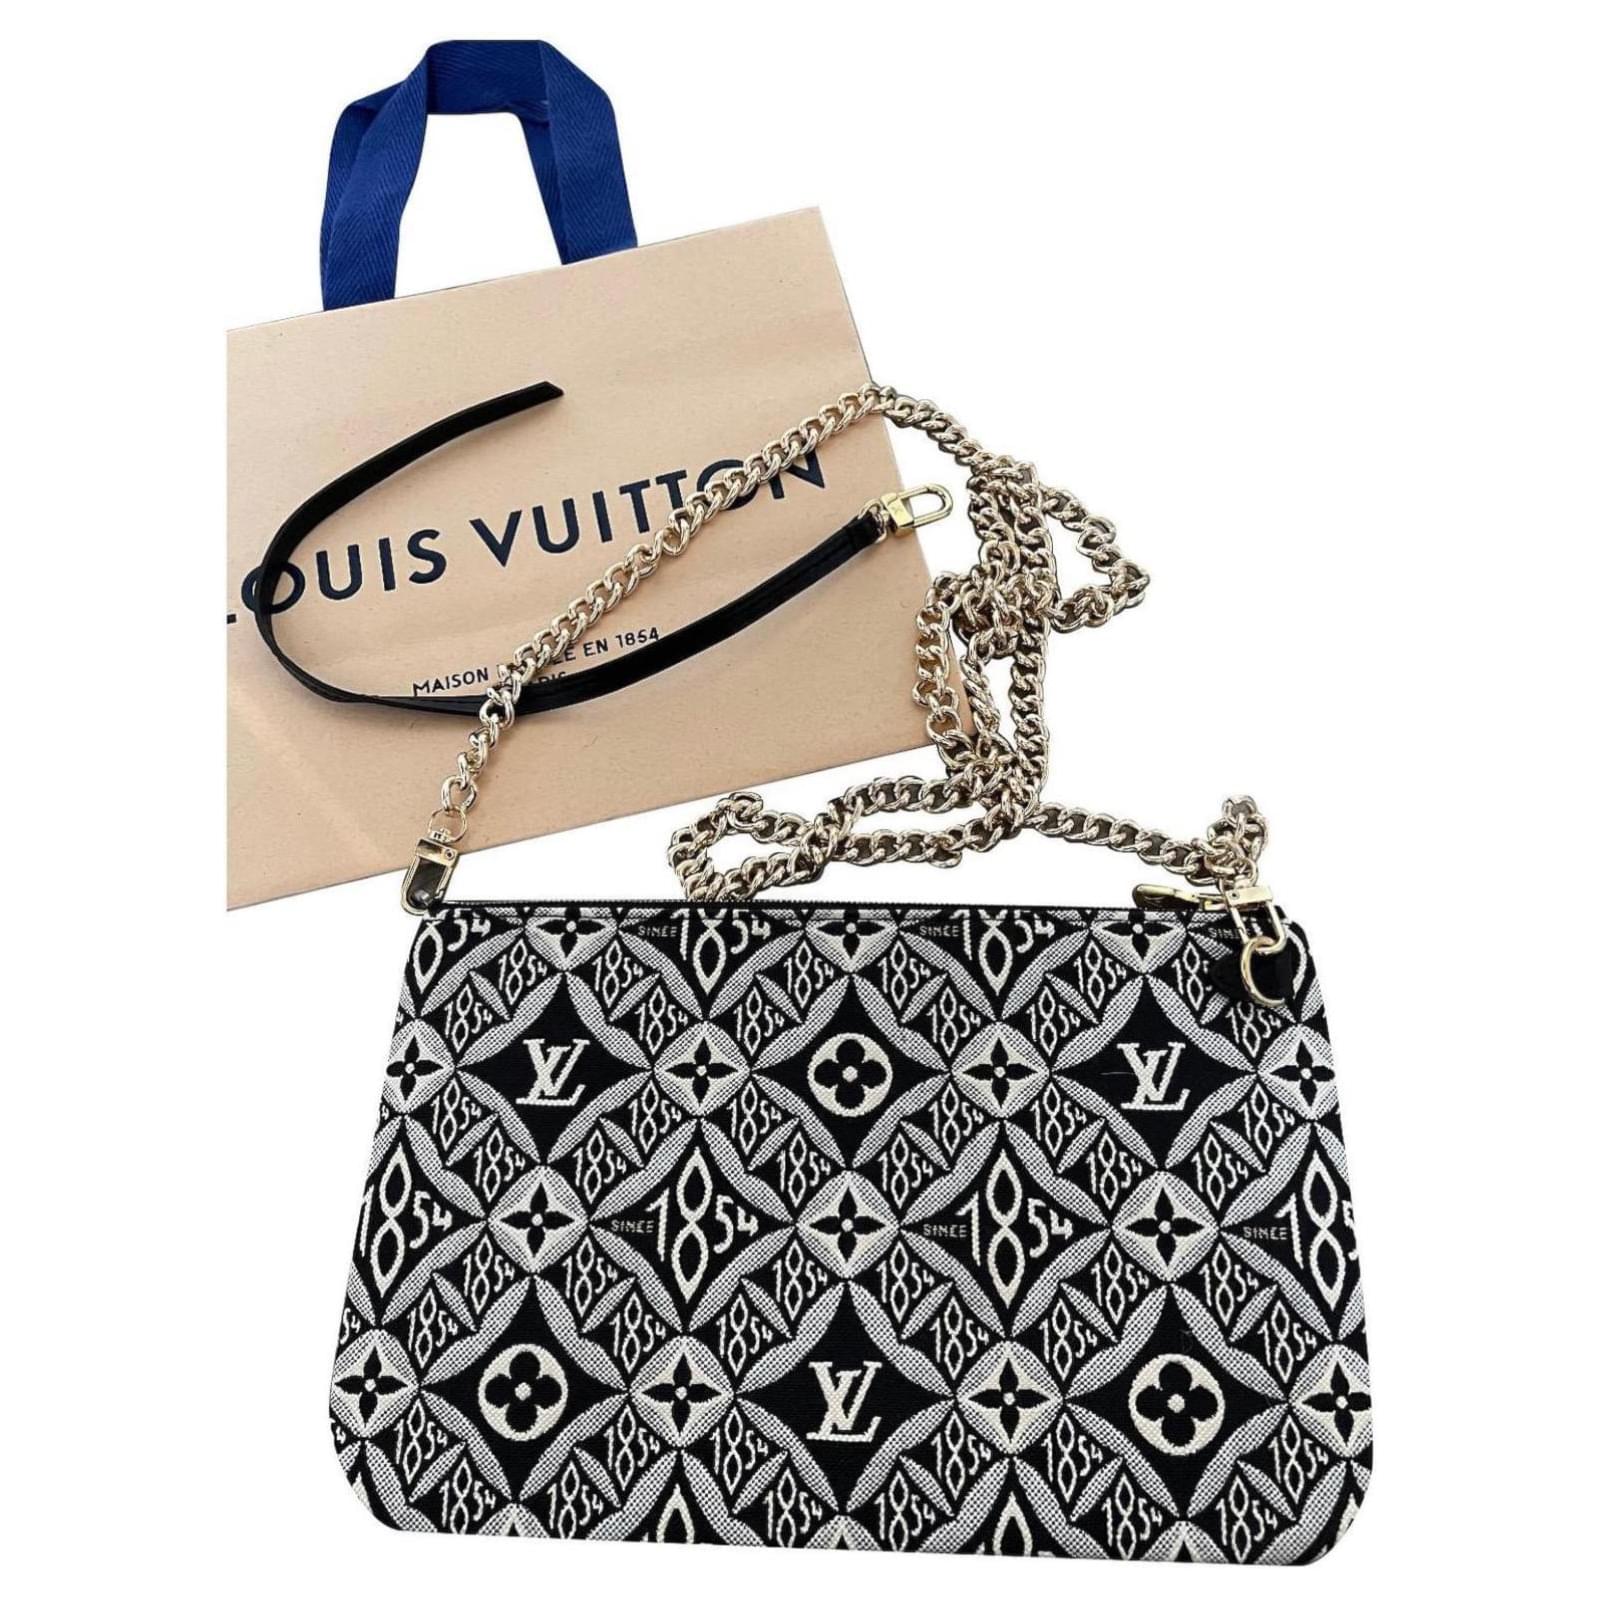 Clutch Bags Louis Vuitton Since 1854